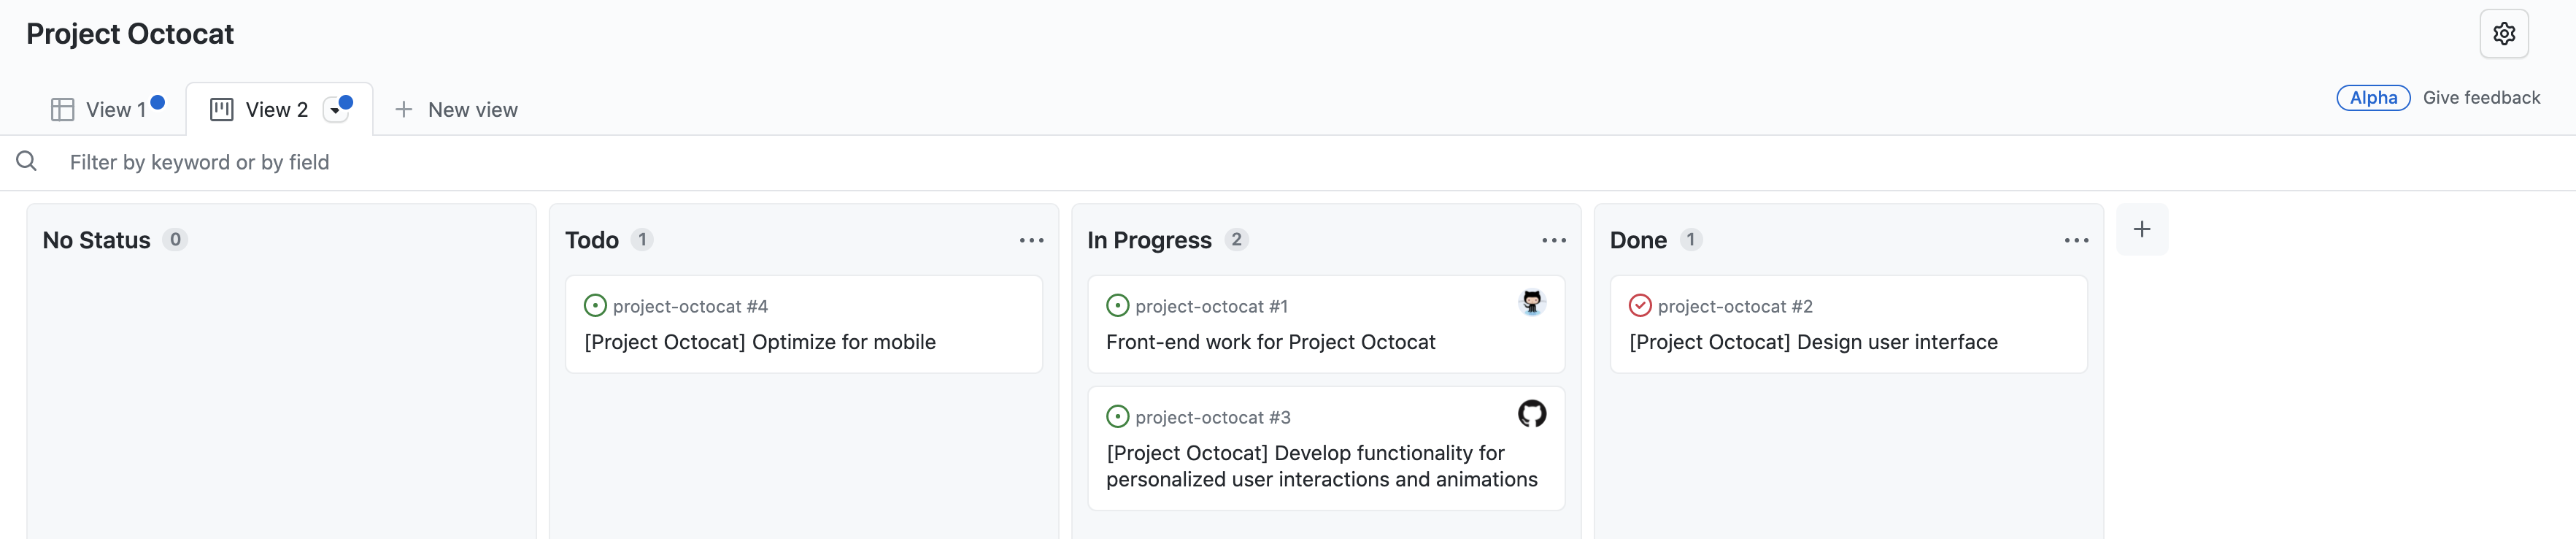 Capture d’écran de la vue panneau du projet « Project Octocat », avec les problèmes organisés en colonnes « Aucun état », « À faire », « En cours » et « Terminé ».